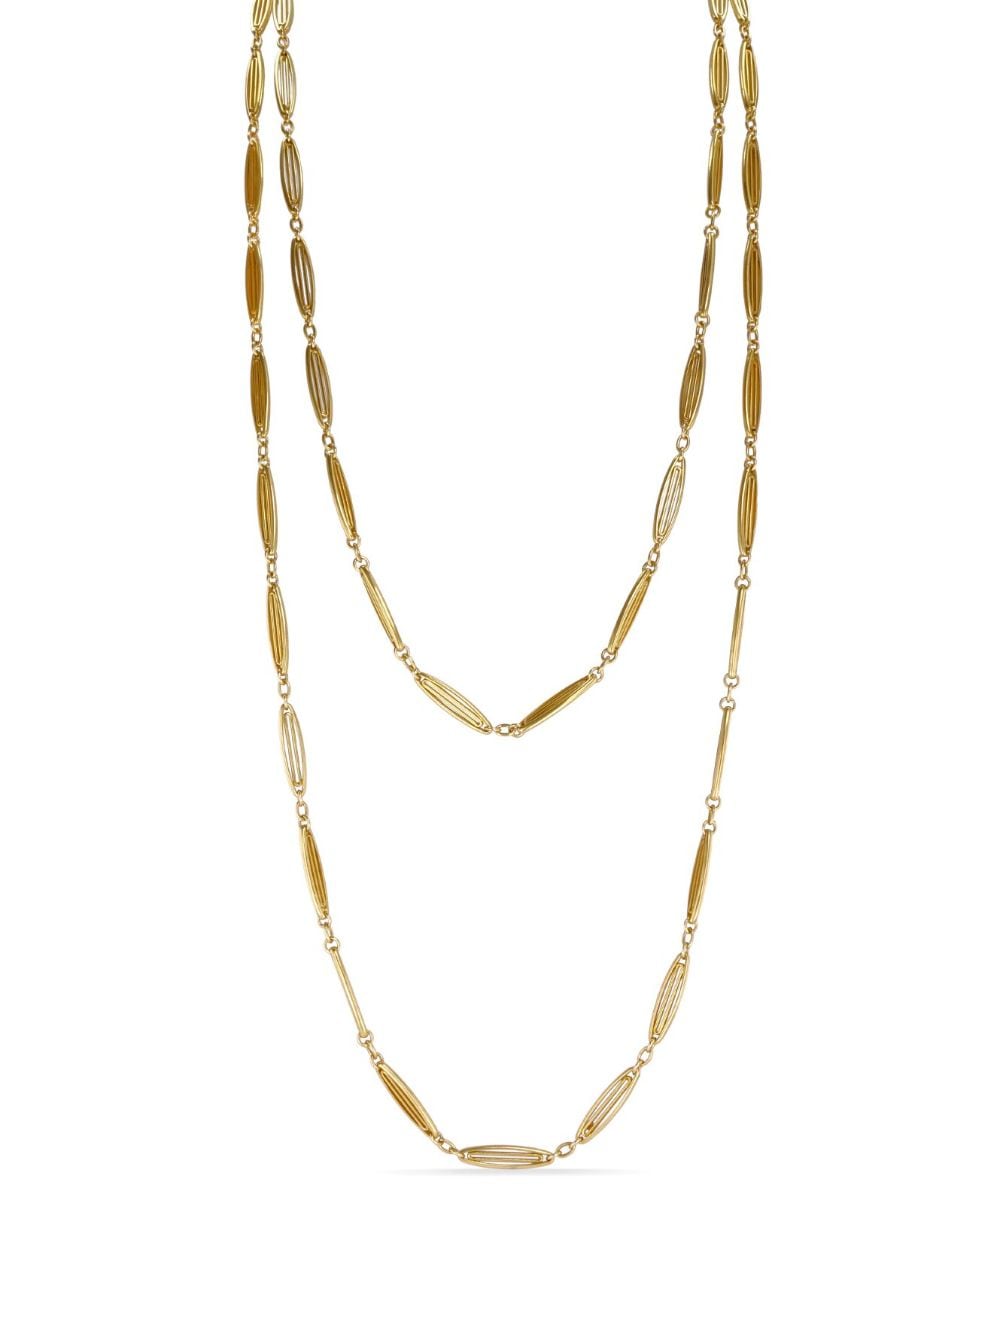 Pragnell Vintage Belle Epoque oval link necklace - Gold von Pragnell Vintage